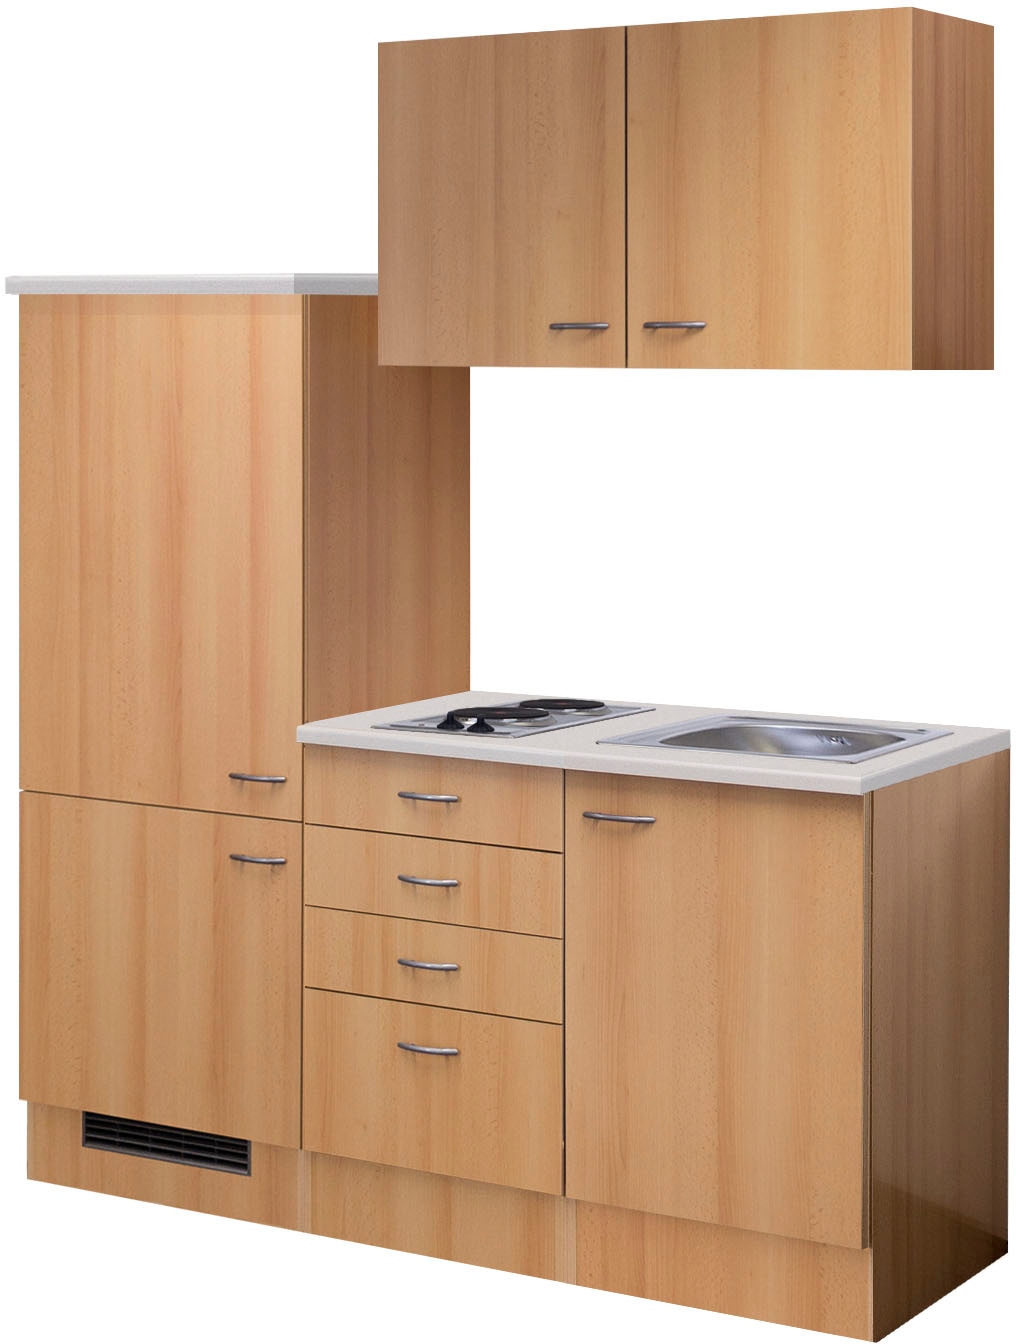 Küche »Nano«, Gesamtbreite 160 cm, mit Einbau-Kühlschrank, Kochfeld und Spüle etc.